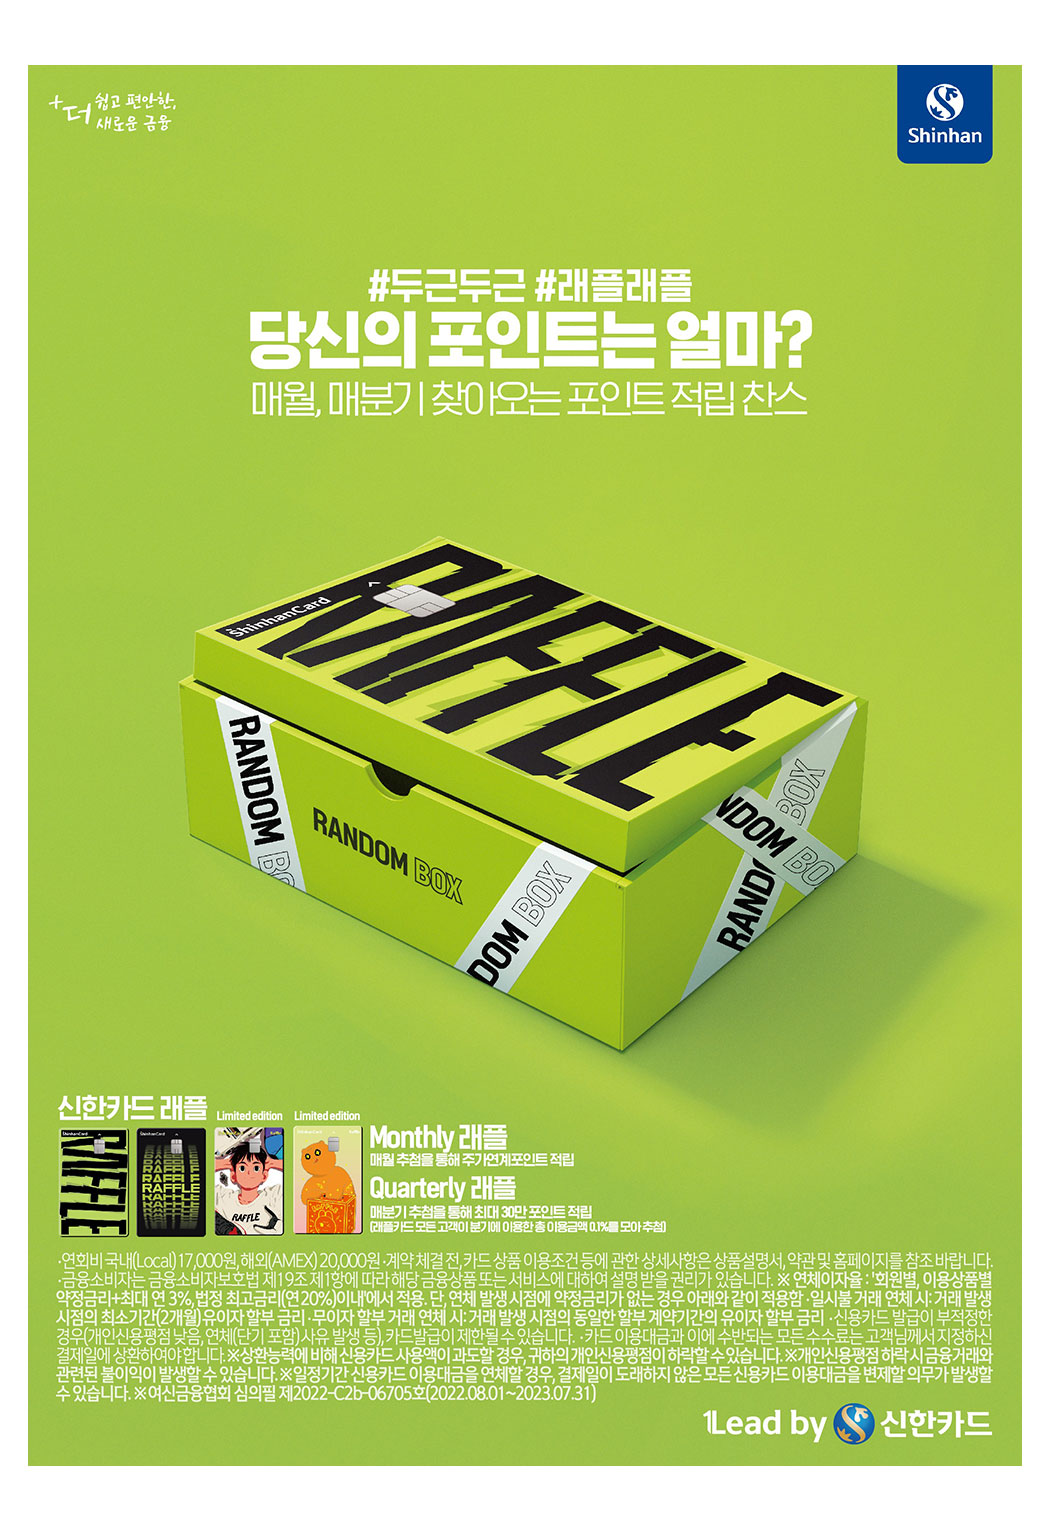 신한카드 래플 인쇄광고 이미지